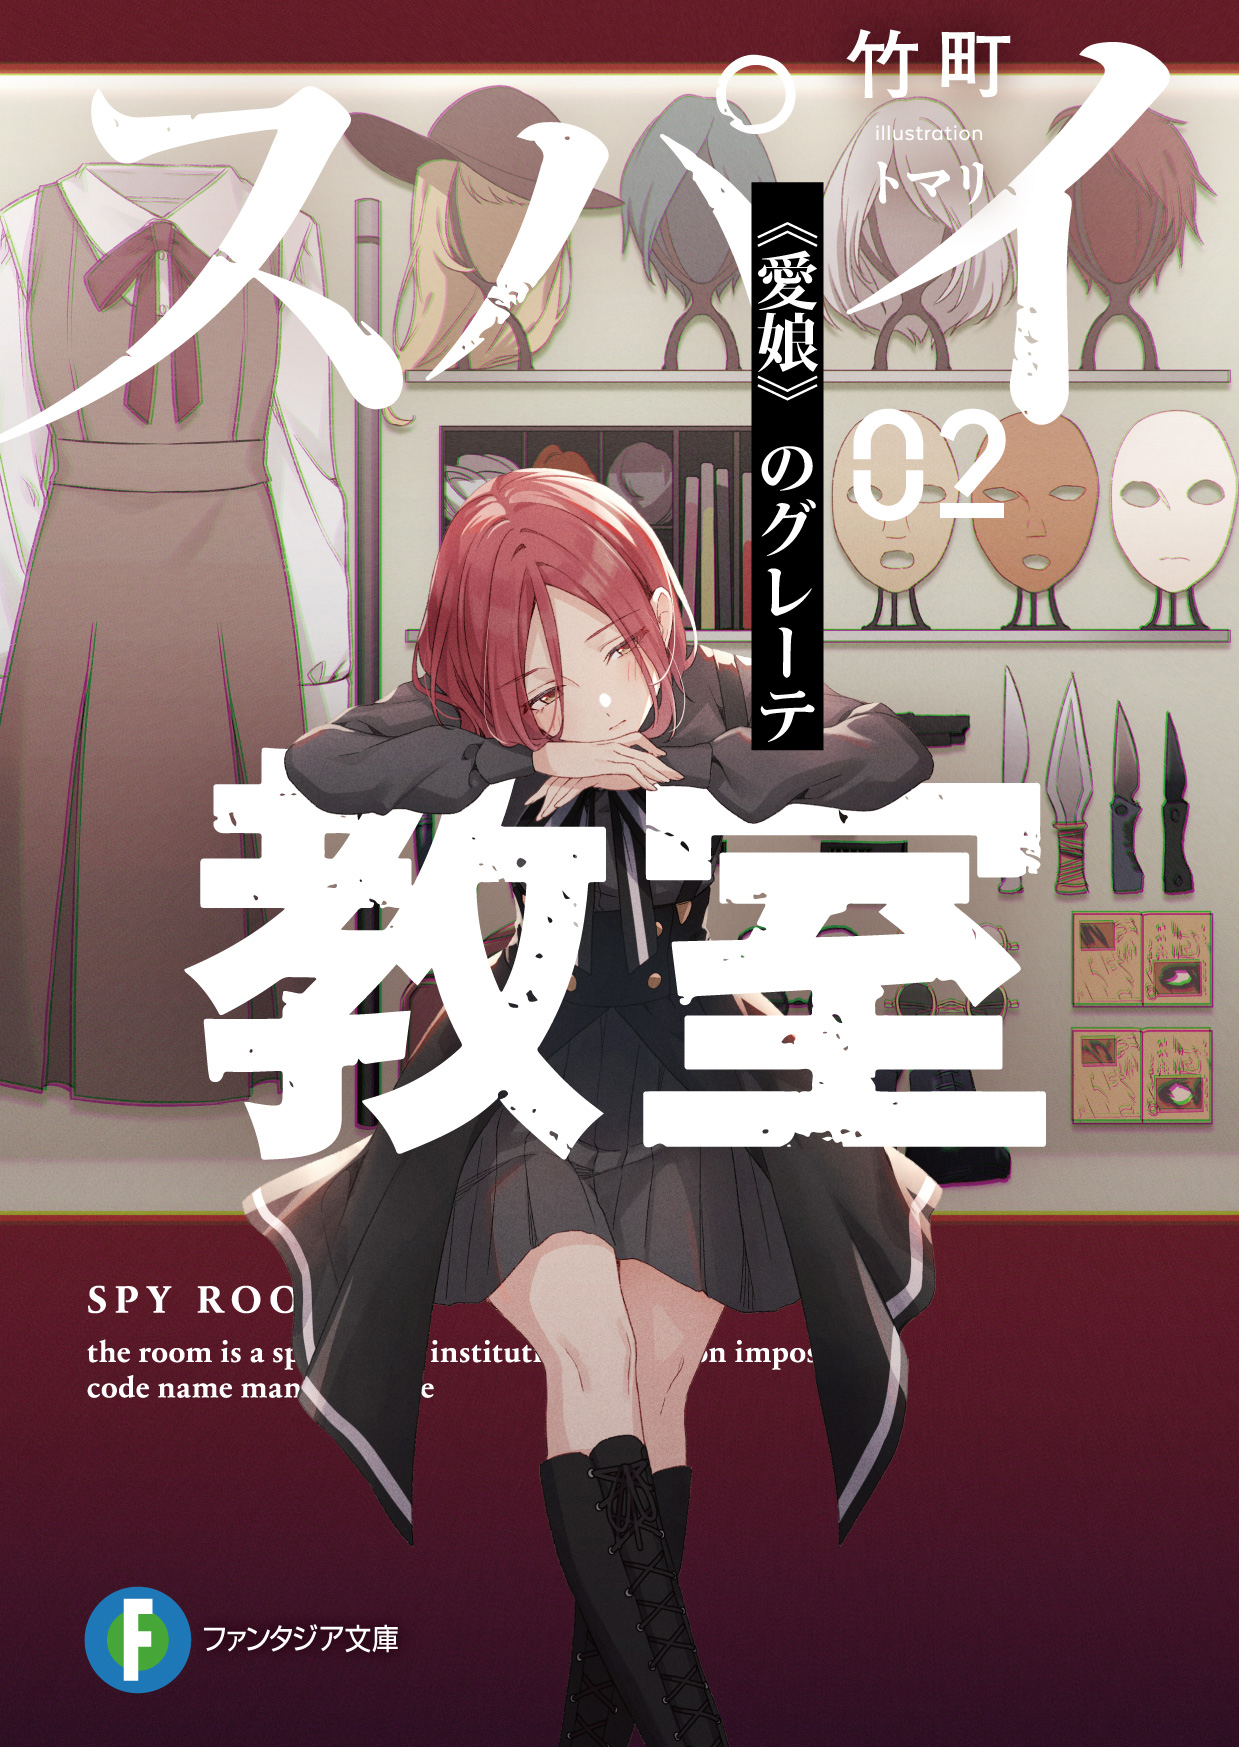 Spy Kyoushitsu Short Story Vol 1Illustrations : r/SpyRoom